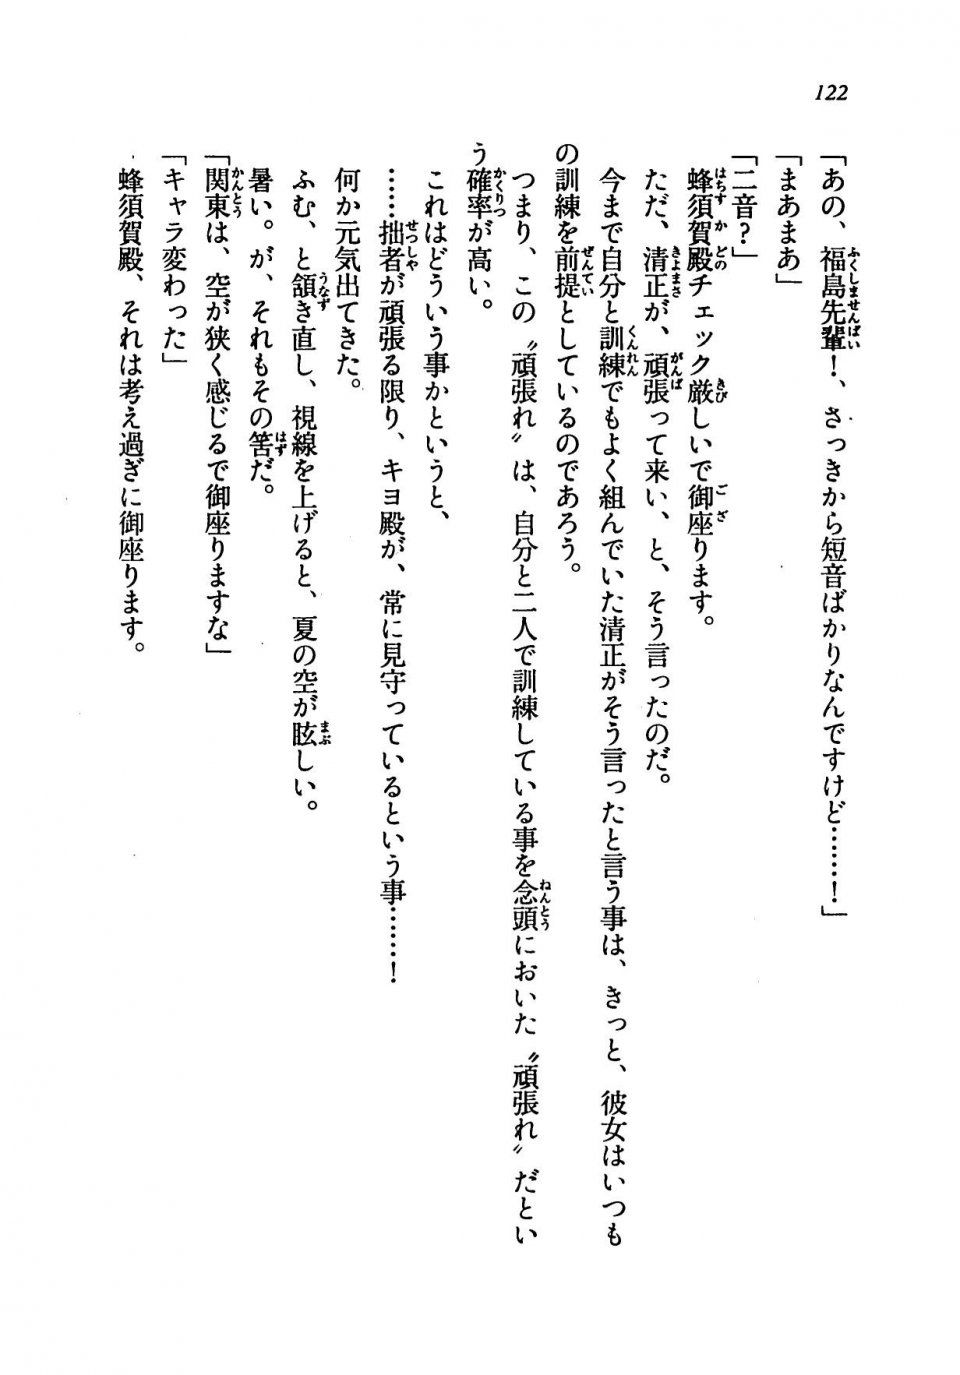 Kyoukai Senjou no Horizon LN Vol 19(8A) - Photo #122